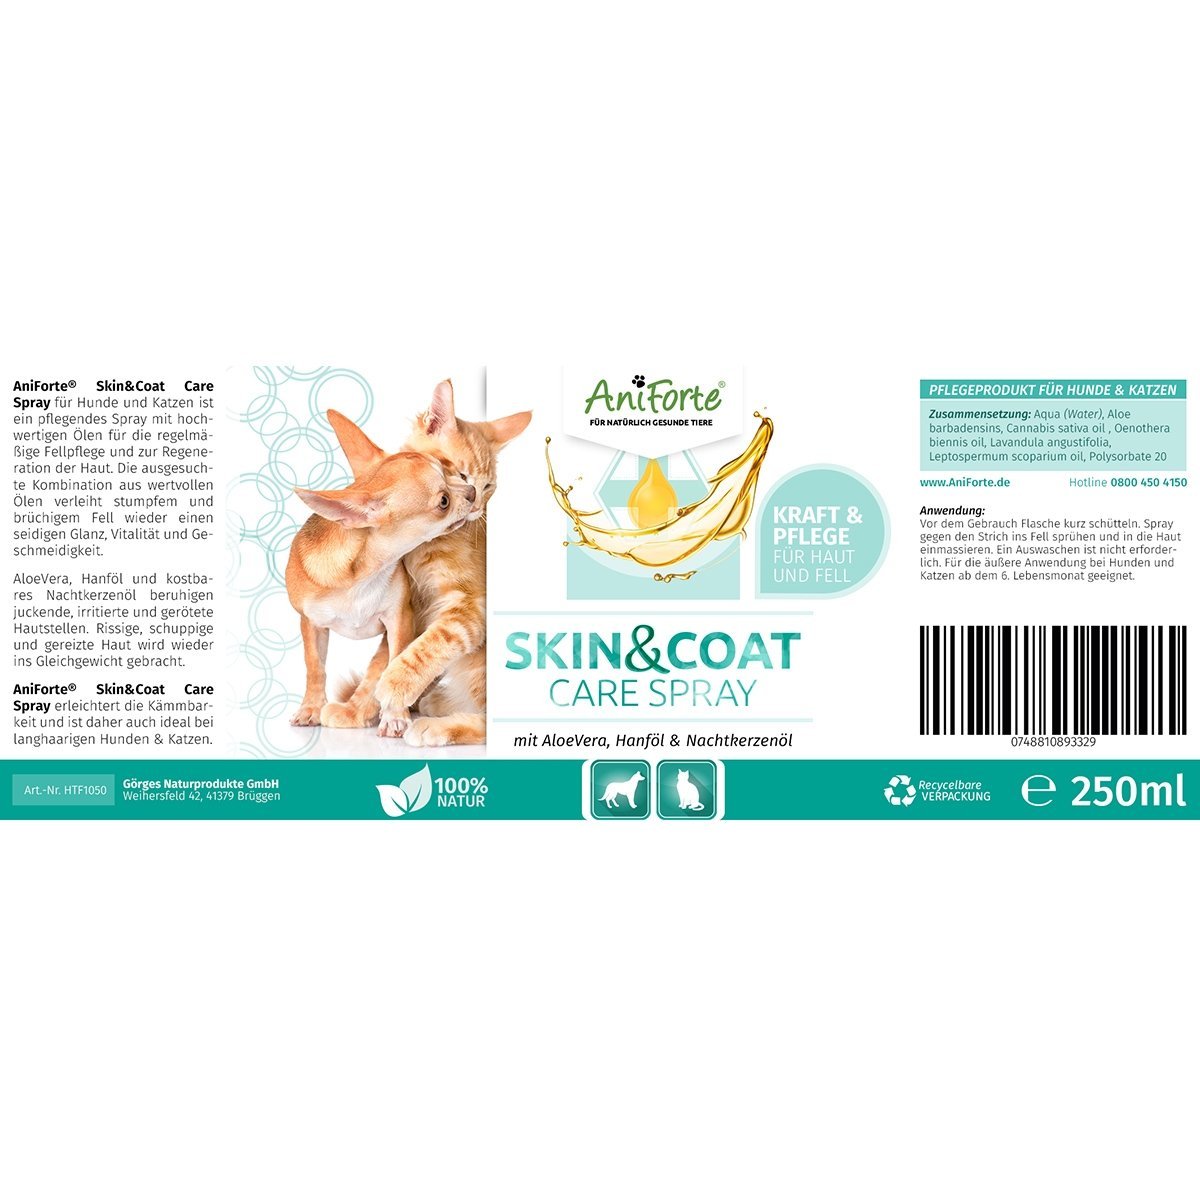 Aniforte - Skin & Coat Care Spray 250 ml